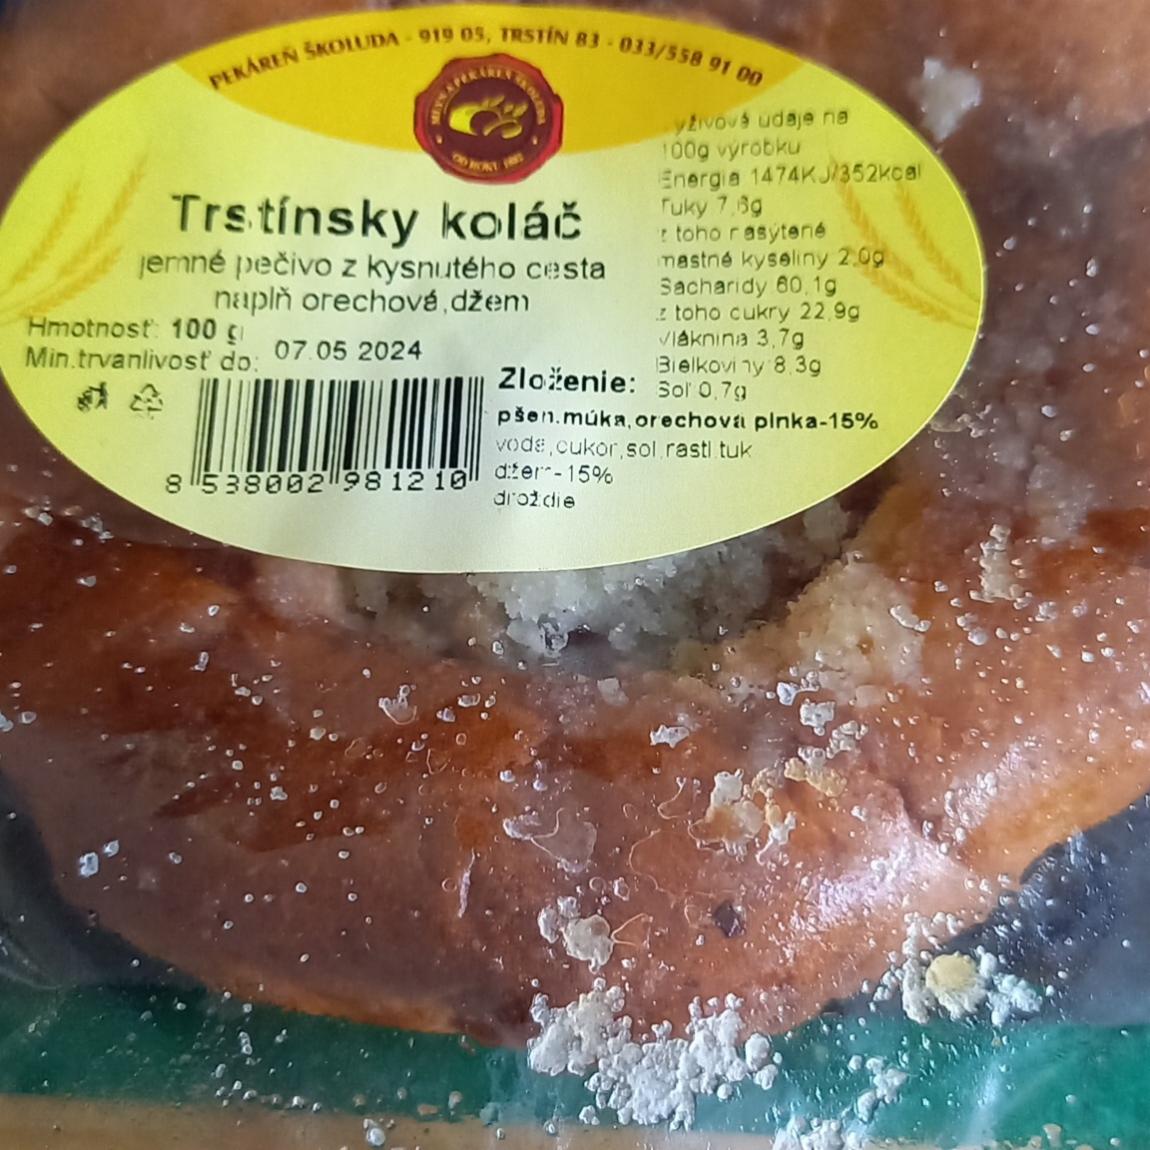 Fotografie - Trstínsky koláč Pekáreň Školuda